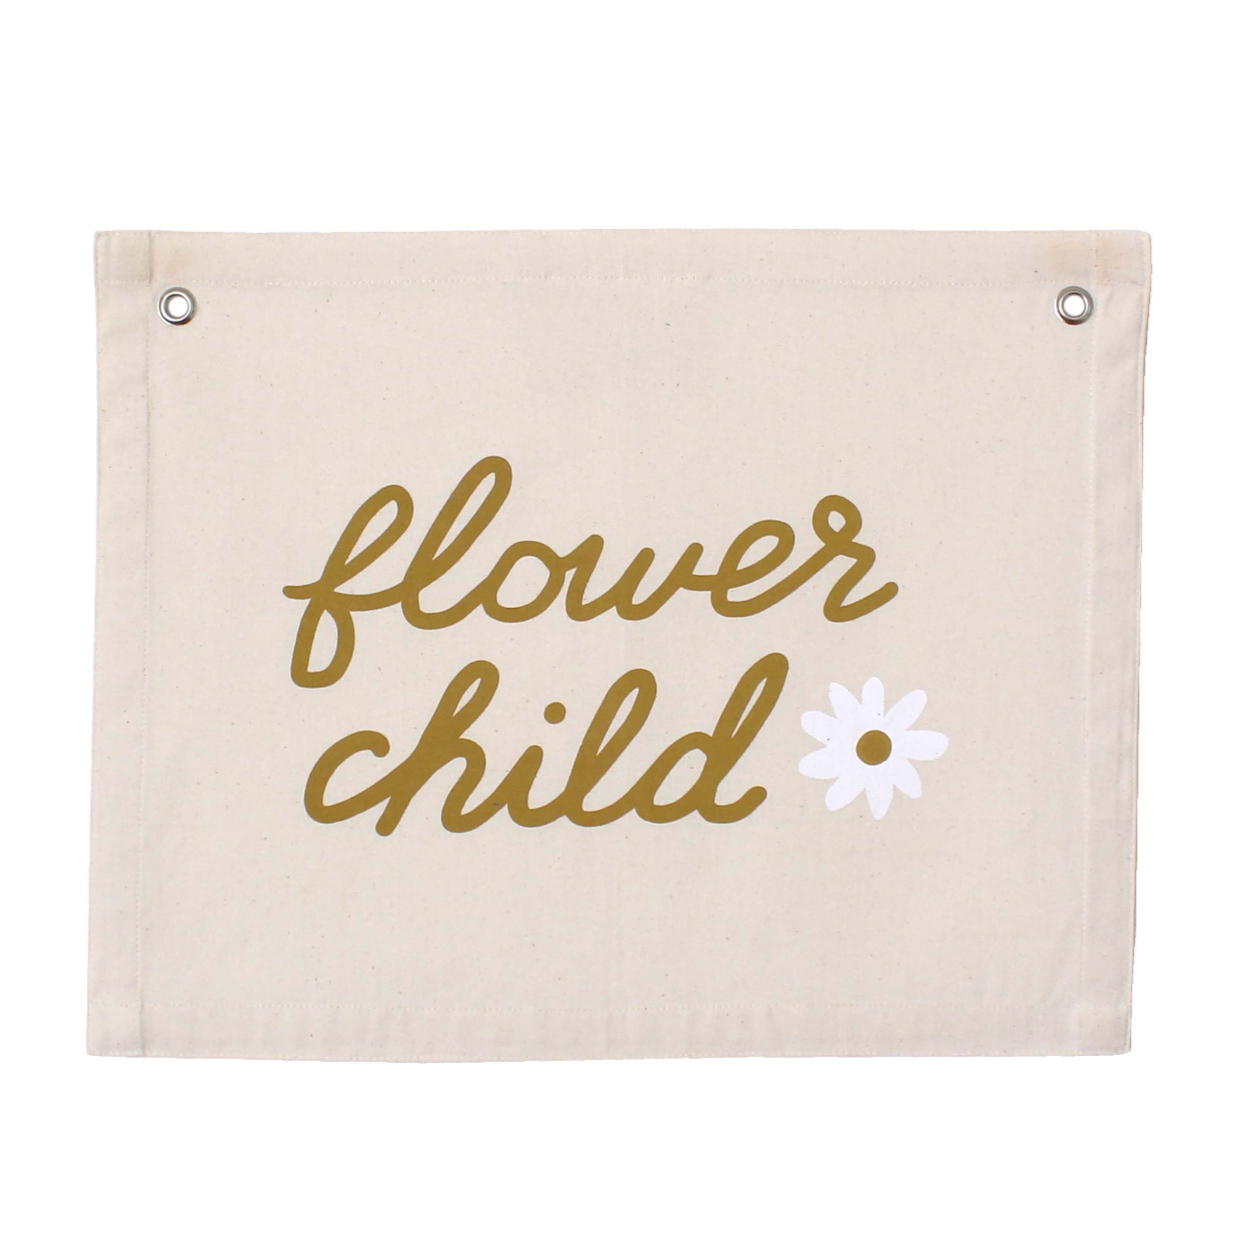 Flower Child Banner